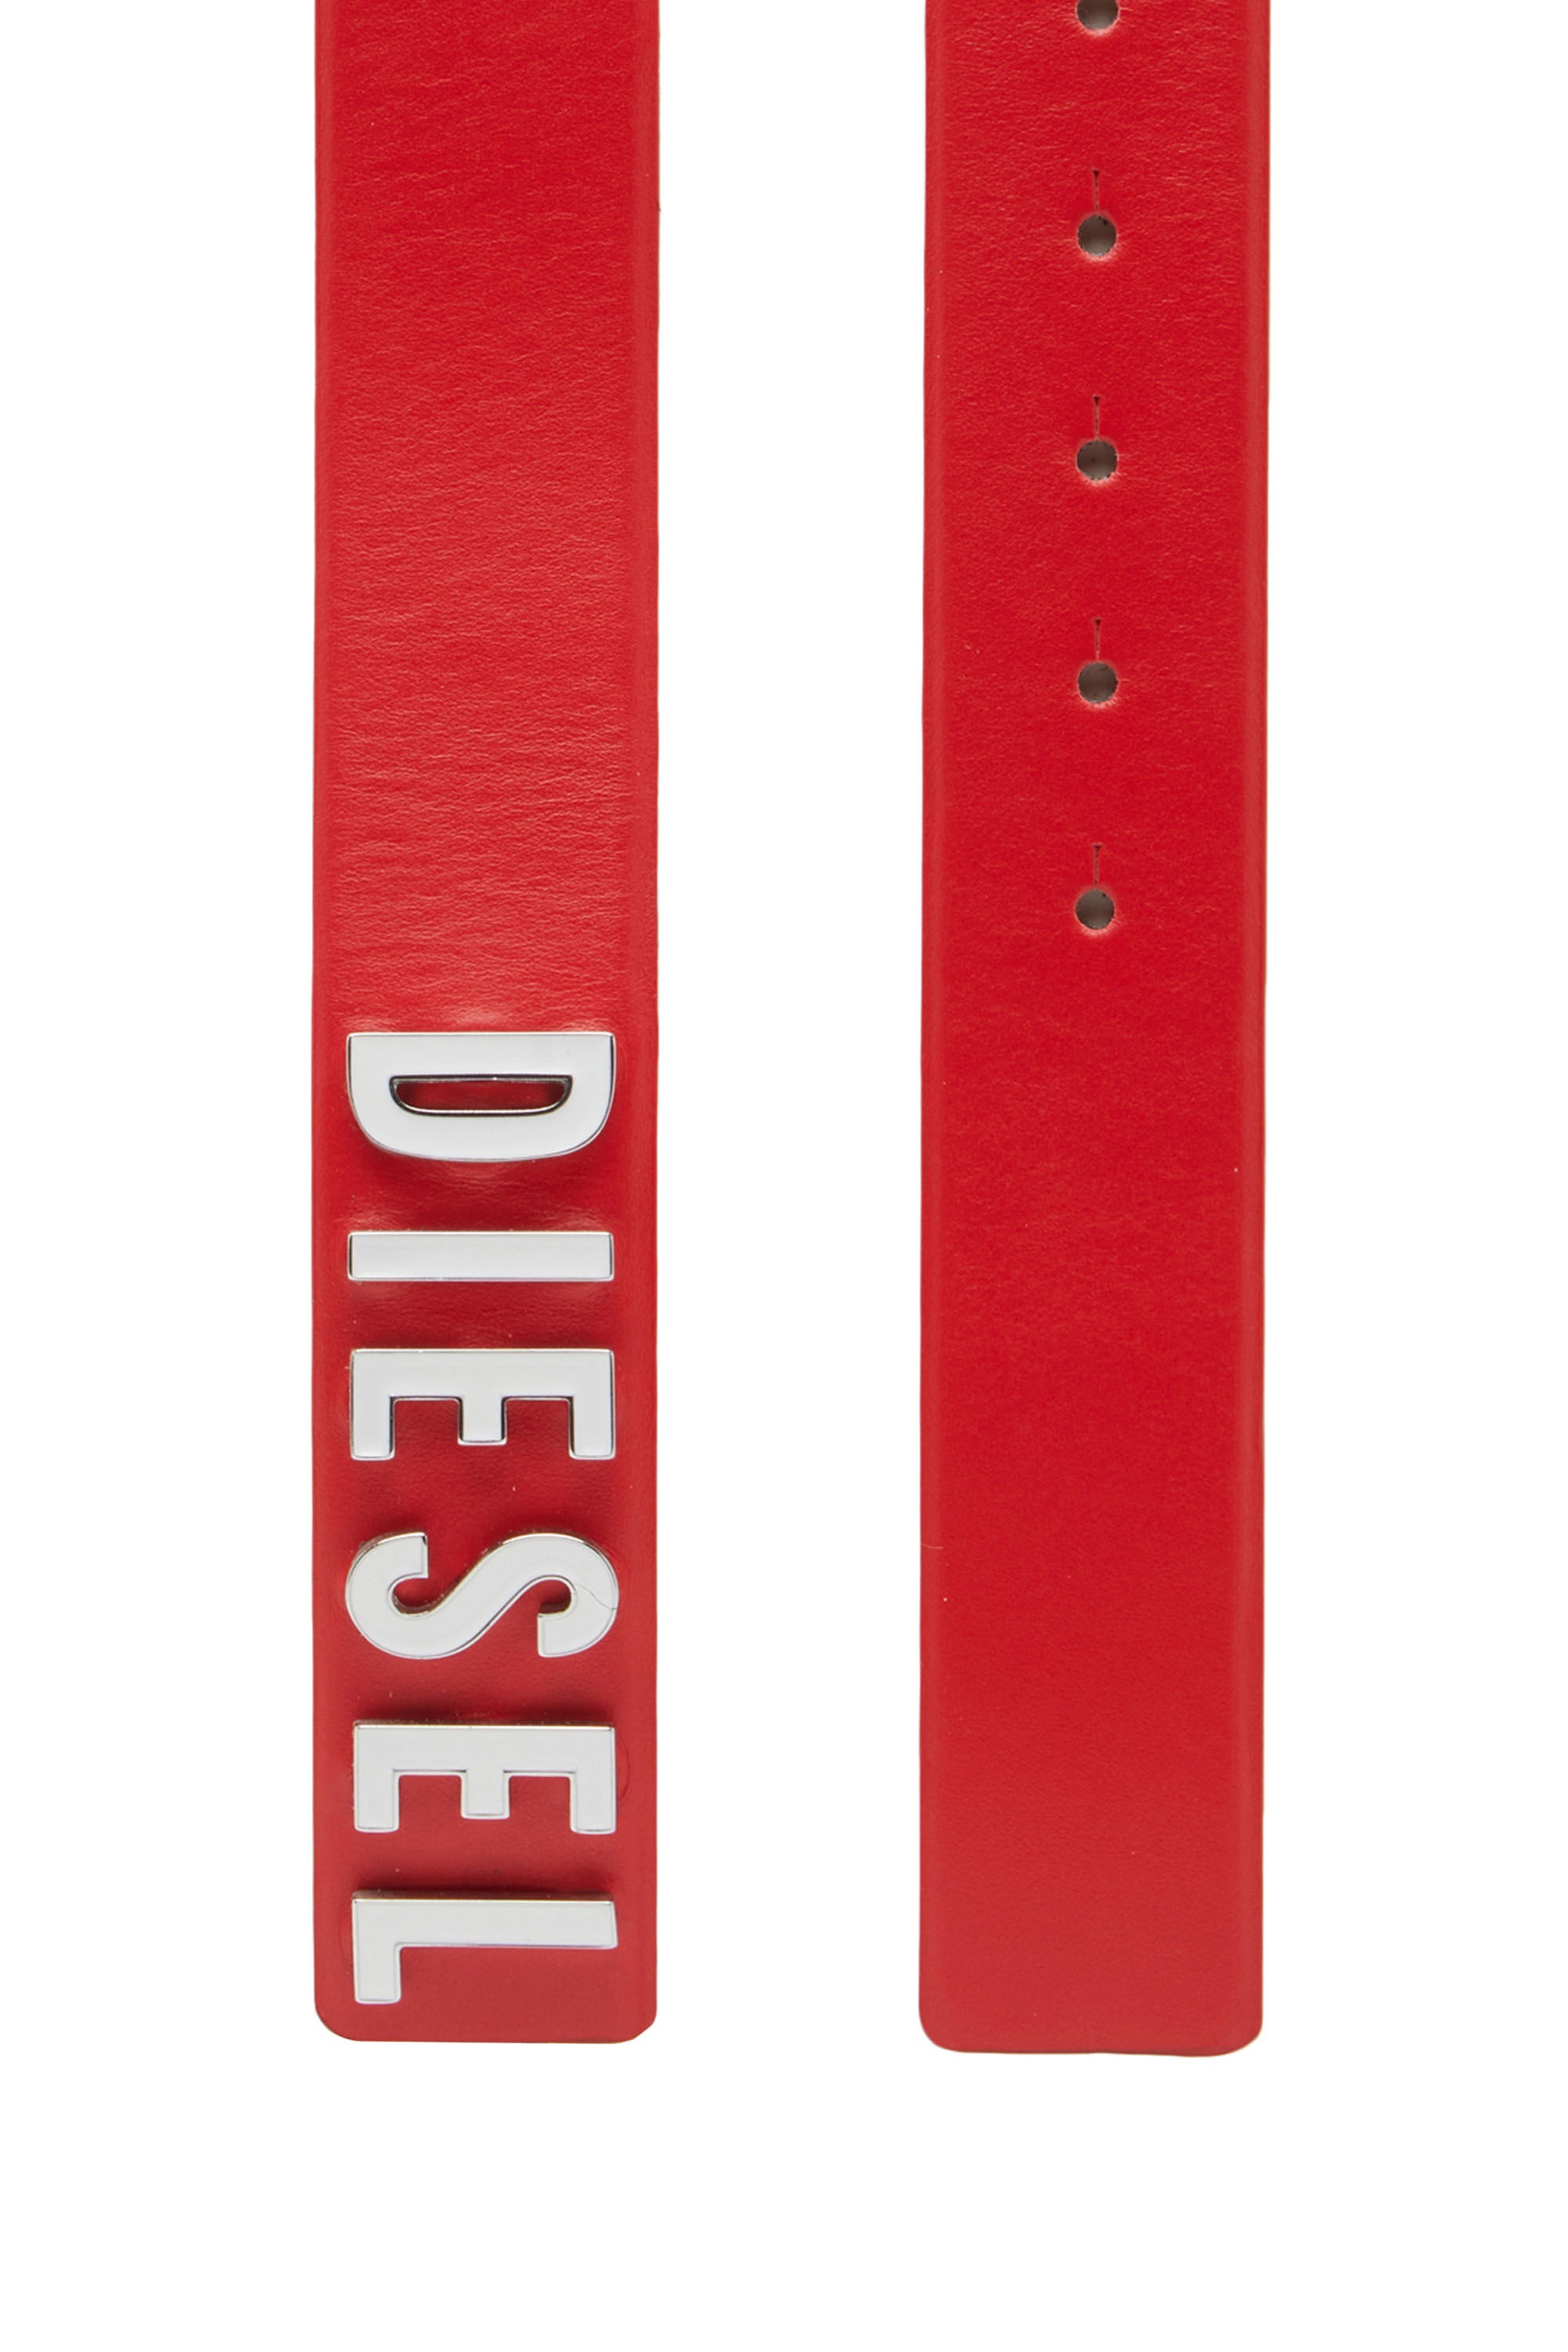 Diesel - B-LETTERS B, Red - Image 2